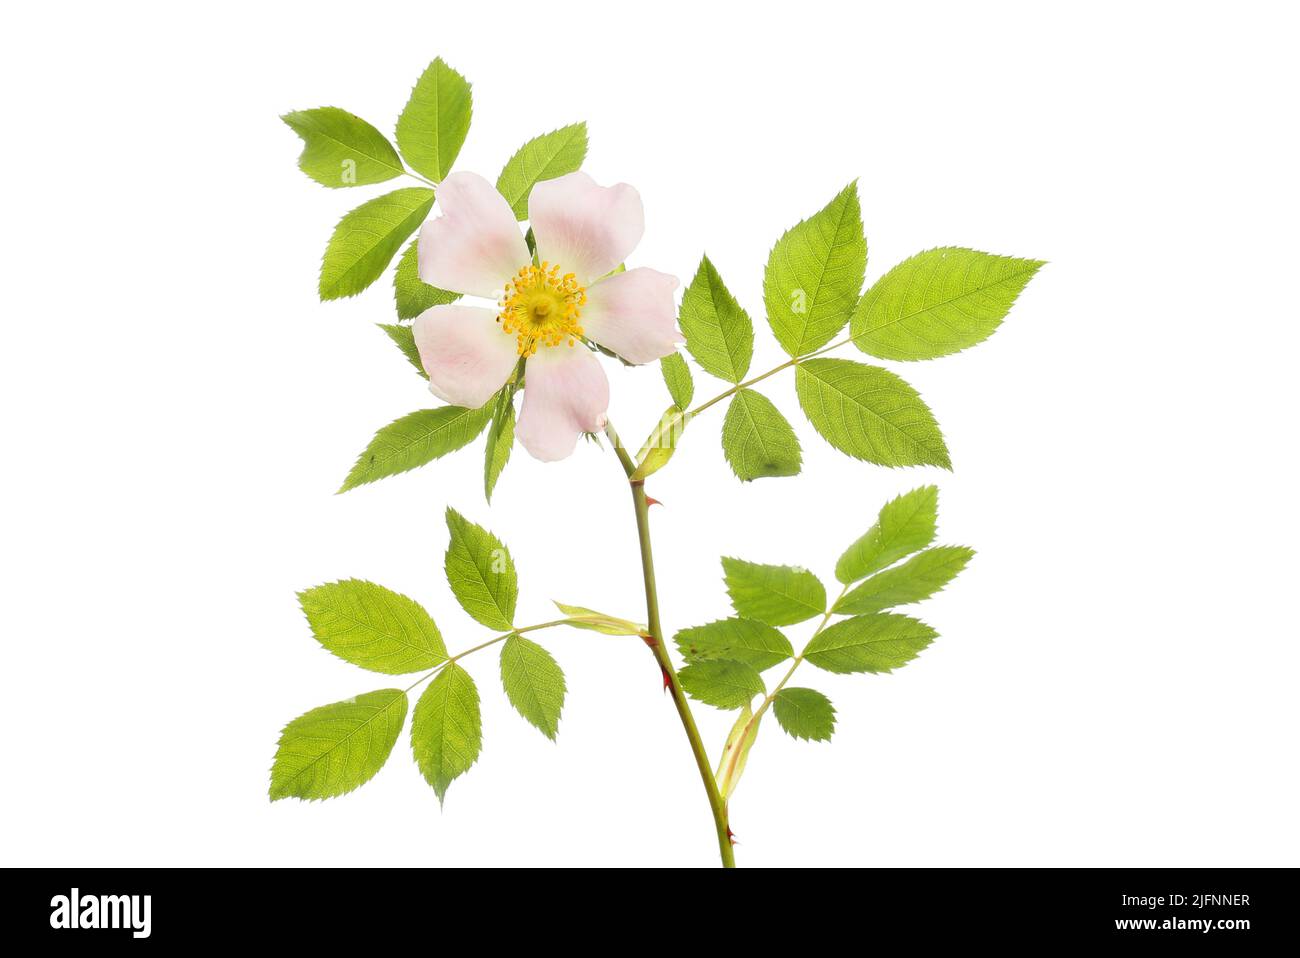 Un solo perro rosa flor y follaje aislado contra blanco Foto de stock